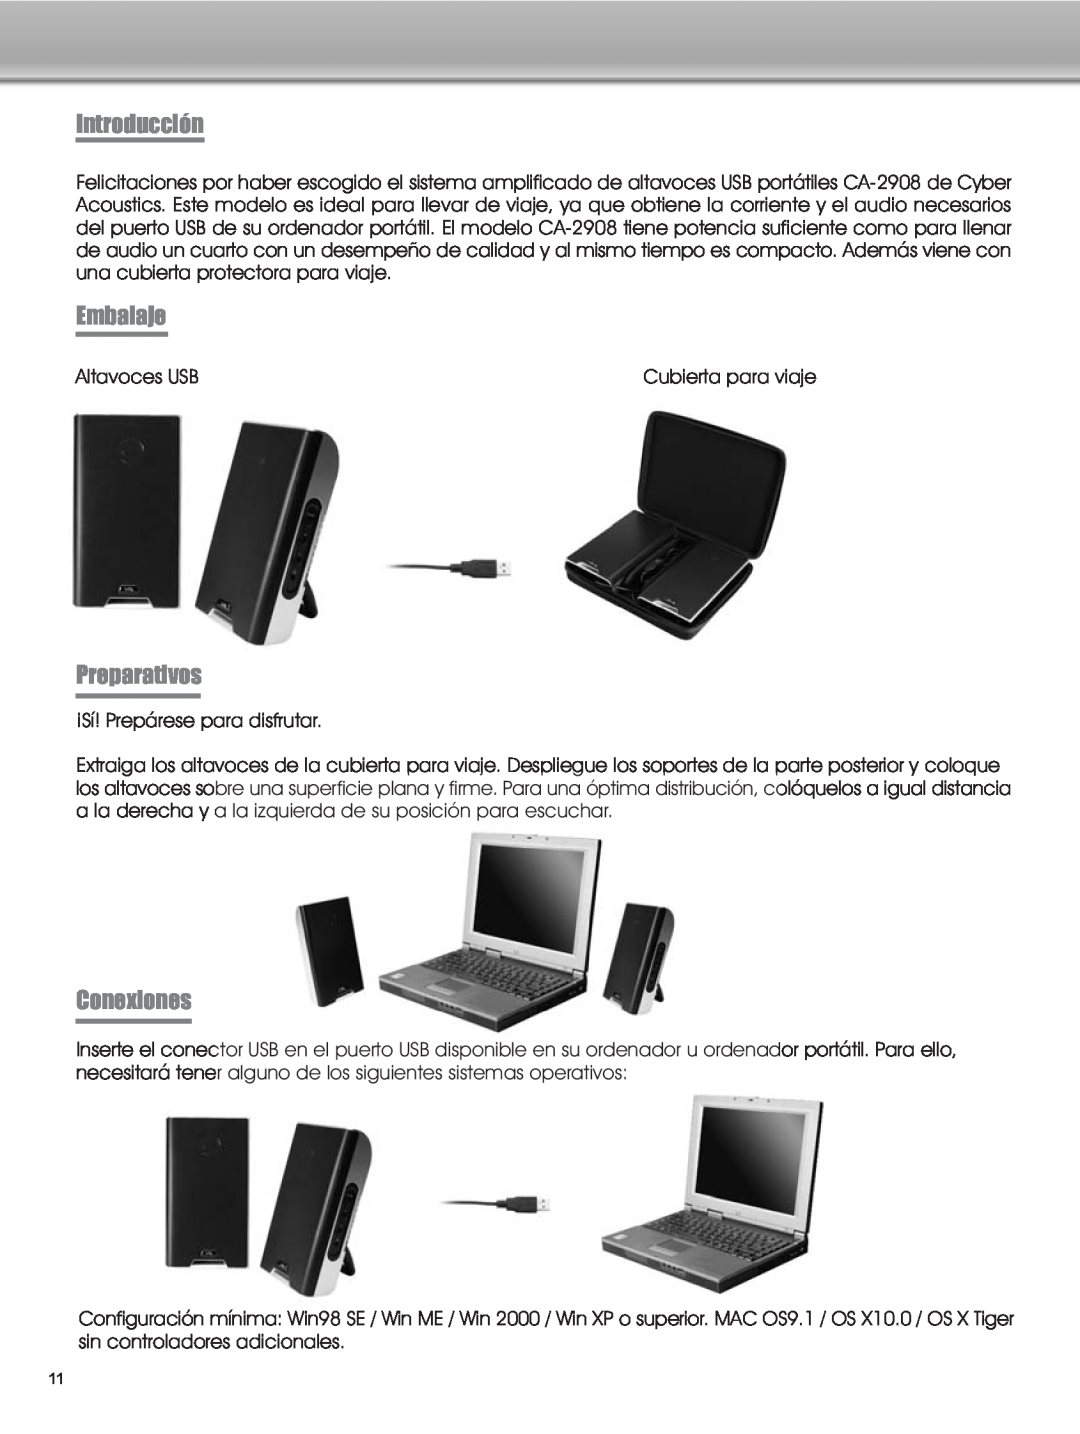 Cyber Acoustics CA-2908 manual Introducción, Embalaje, Preparativos, Conexiones 